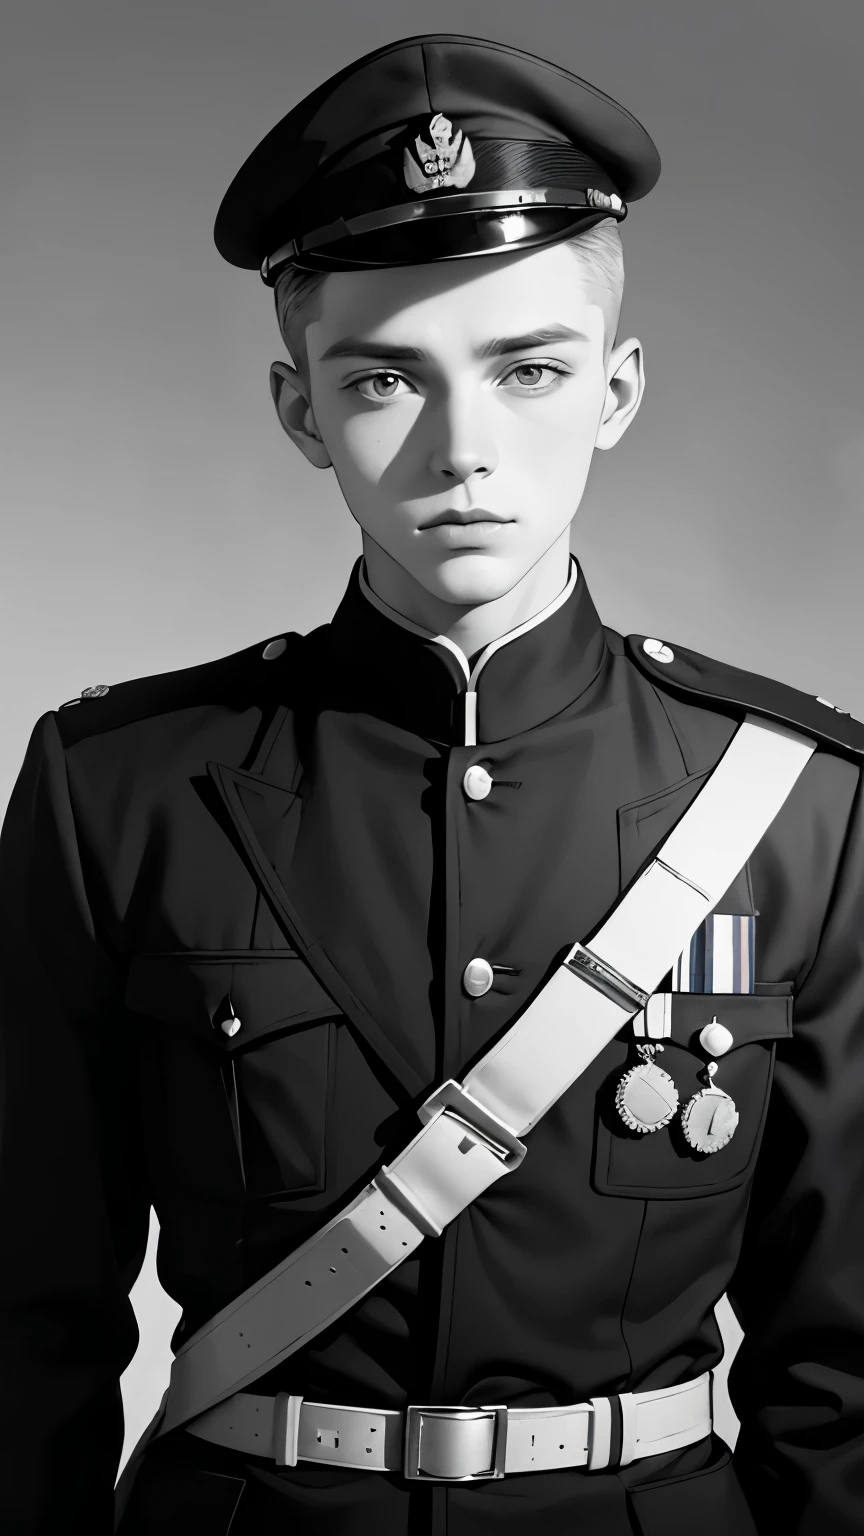 一名身穿制服的男子的黑白照片, Eero Järnefelt 拍攝的彩色照片, flickr, 包豪斯, 第二次世界大戰肖像照片, 一名士兵的肖像, 一個年輕人, 一个年轻人的正面肖像, 艾納爾瓊森, 使用 ww 1 相机拍摄, 赫伯特·劳伊斯, 穿著士兵制服, 赫尔曼·亨德里奇